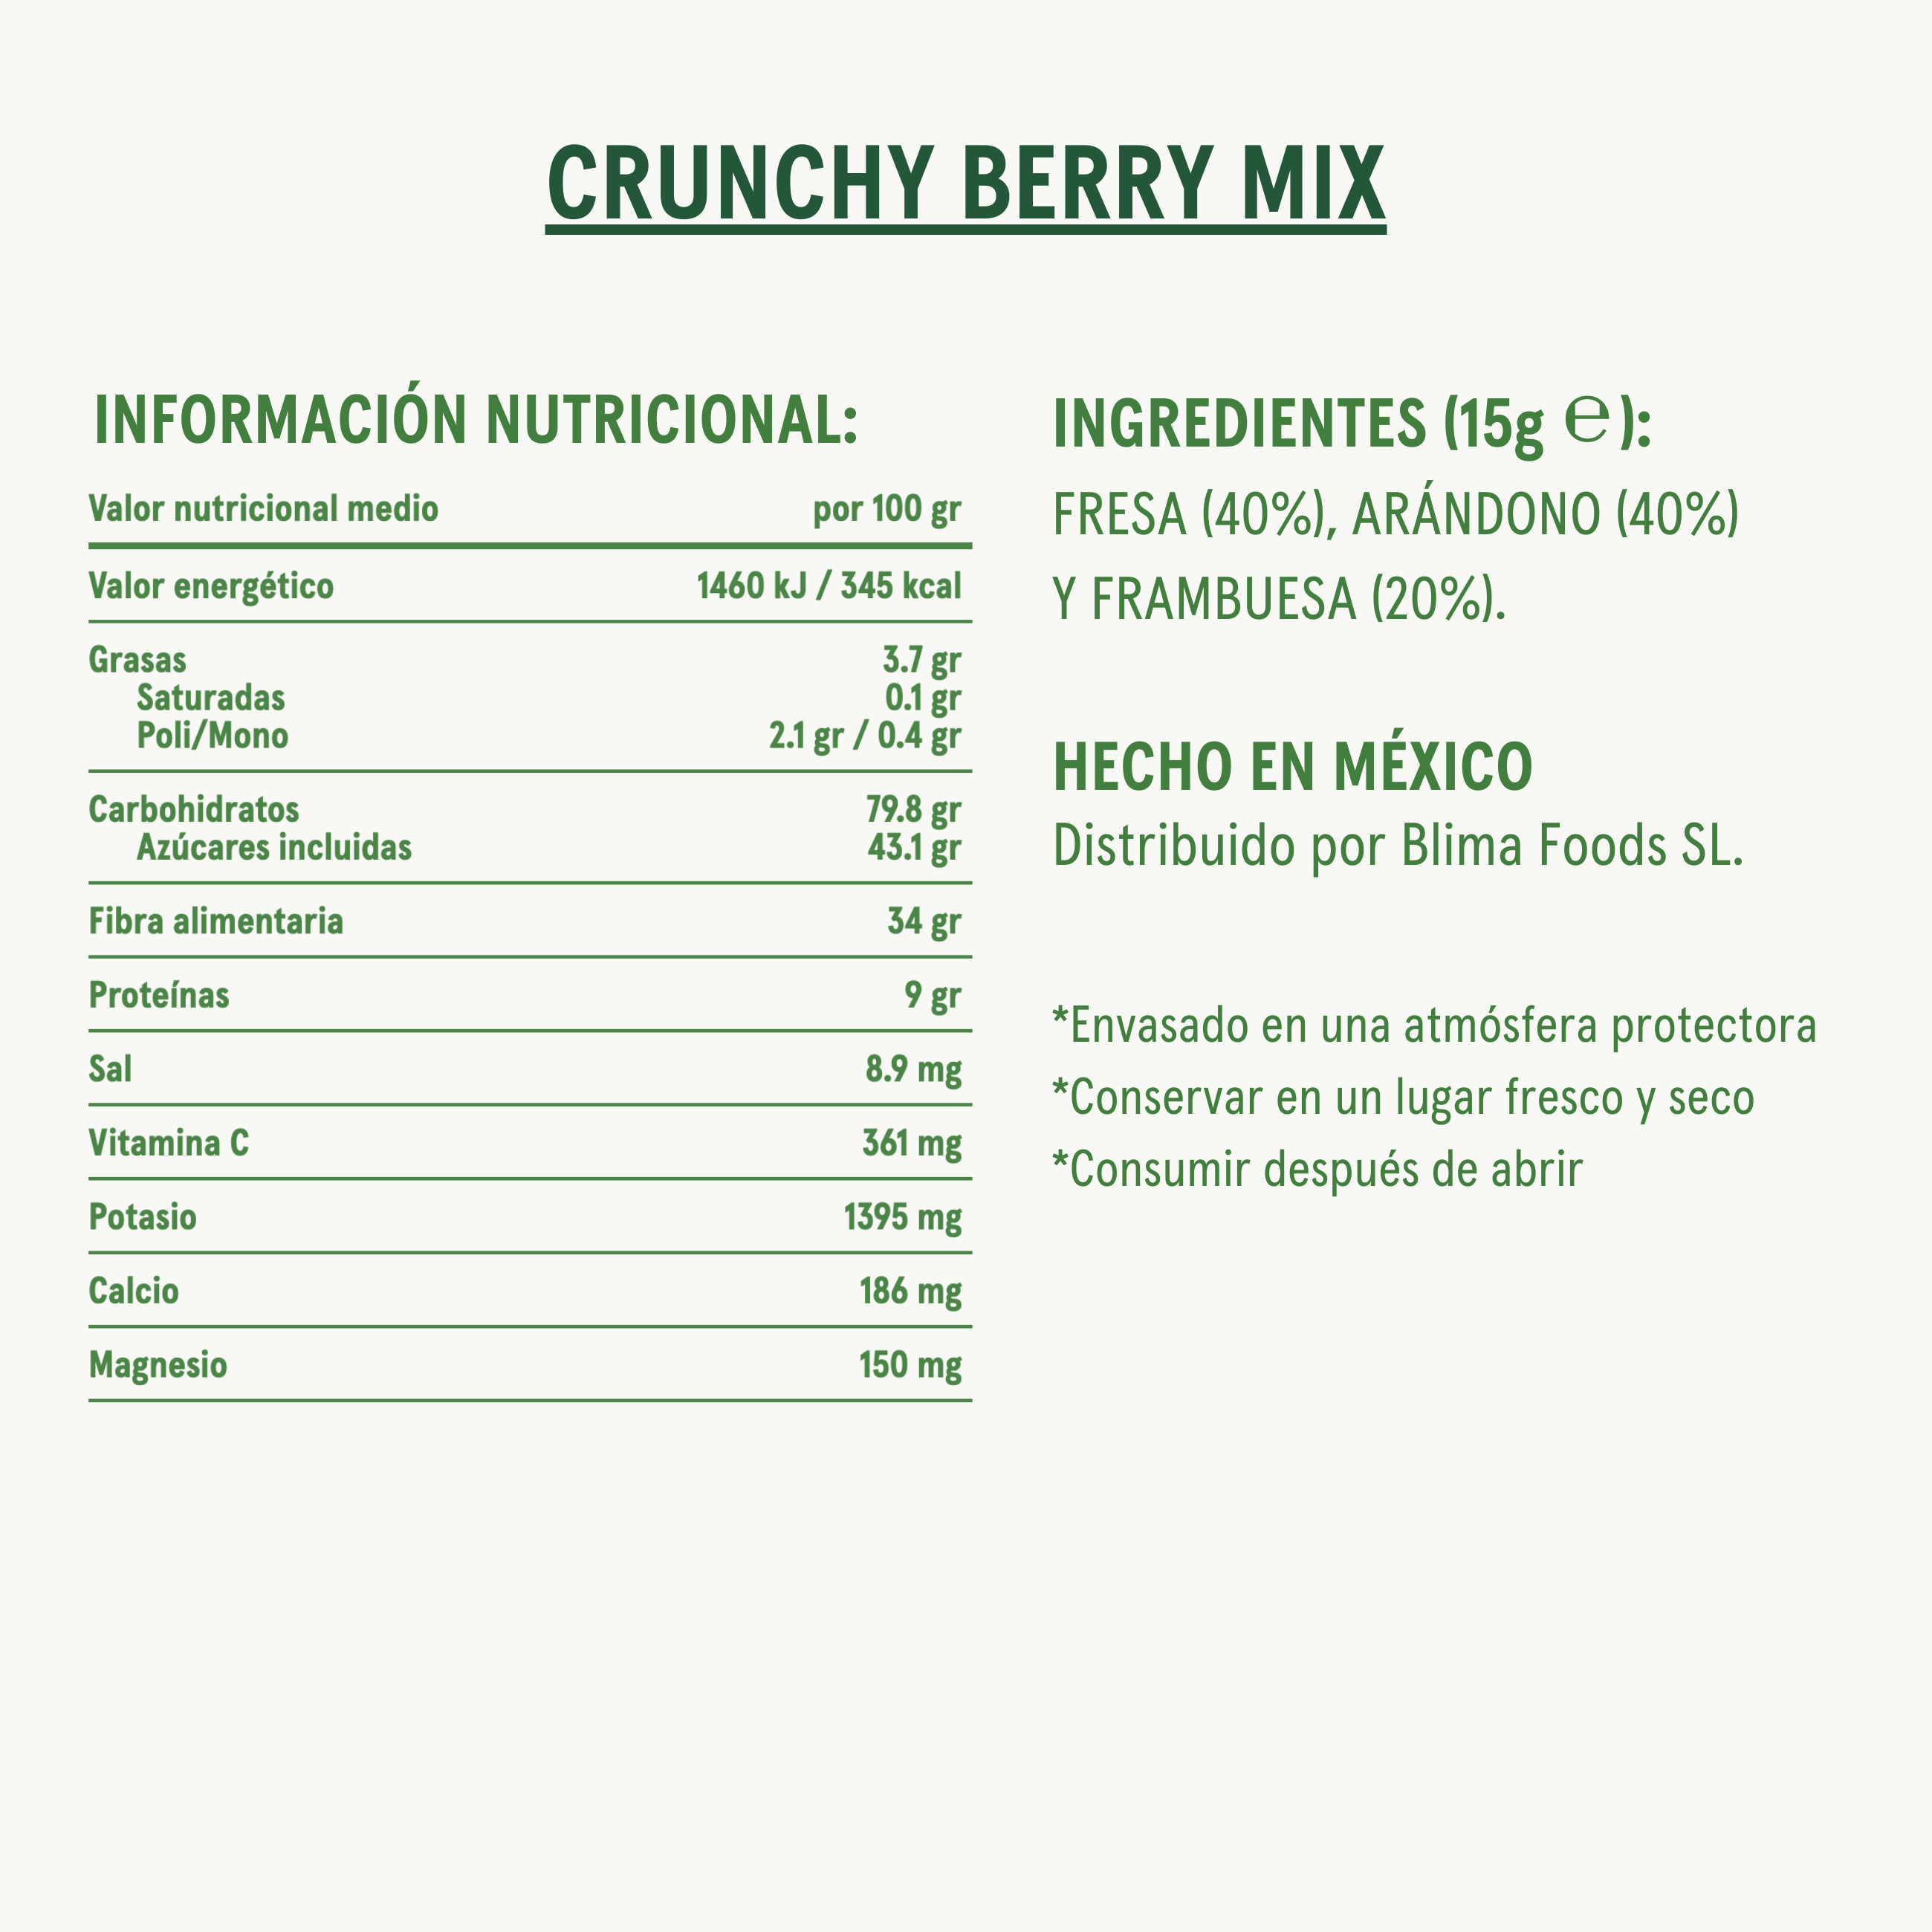 Crunchy Berry Mix